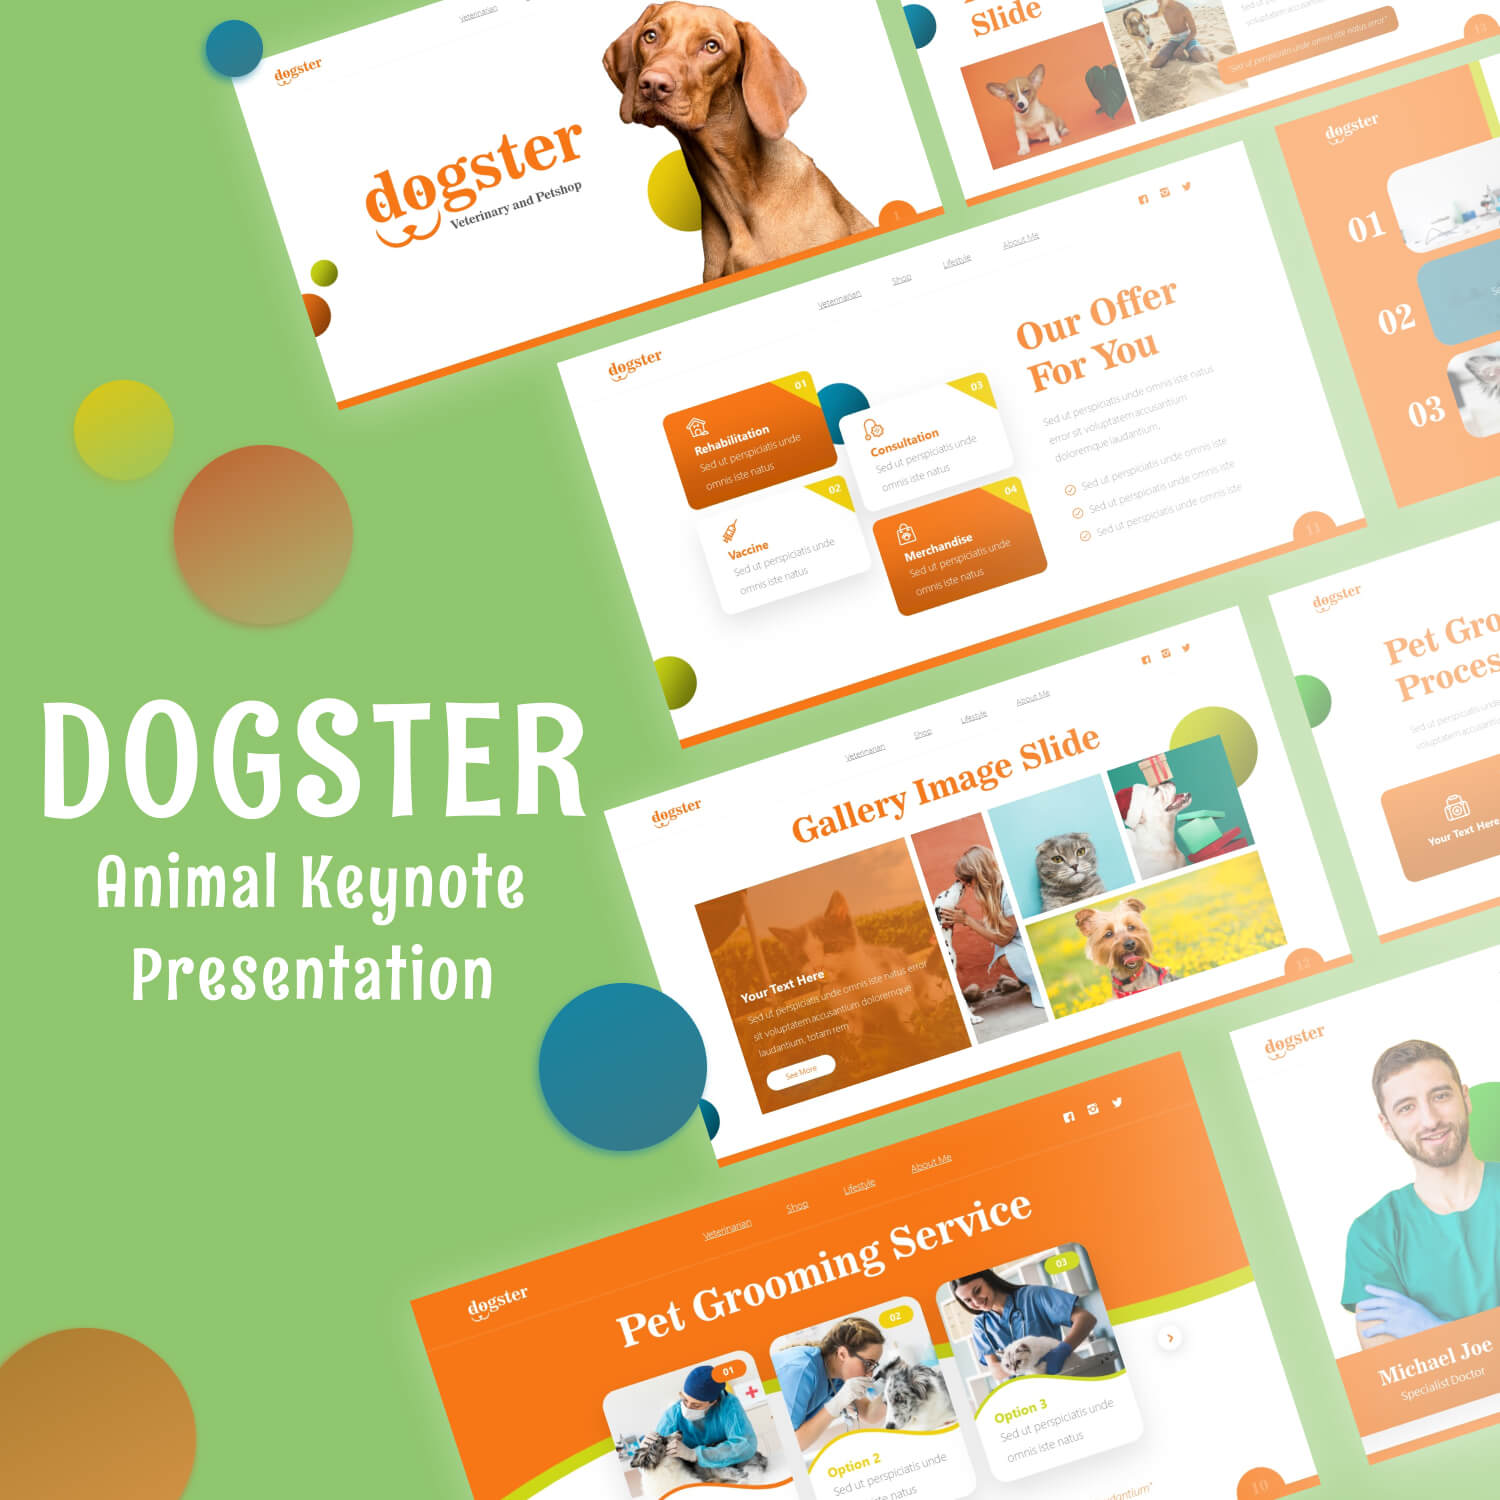 Dogster Animal Keynote Presentation.